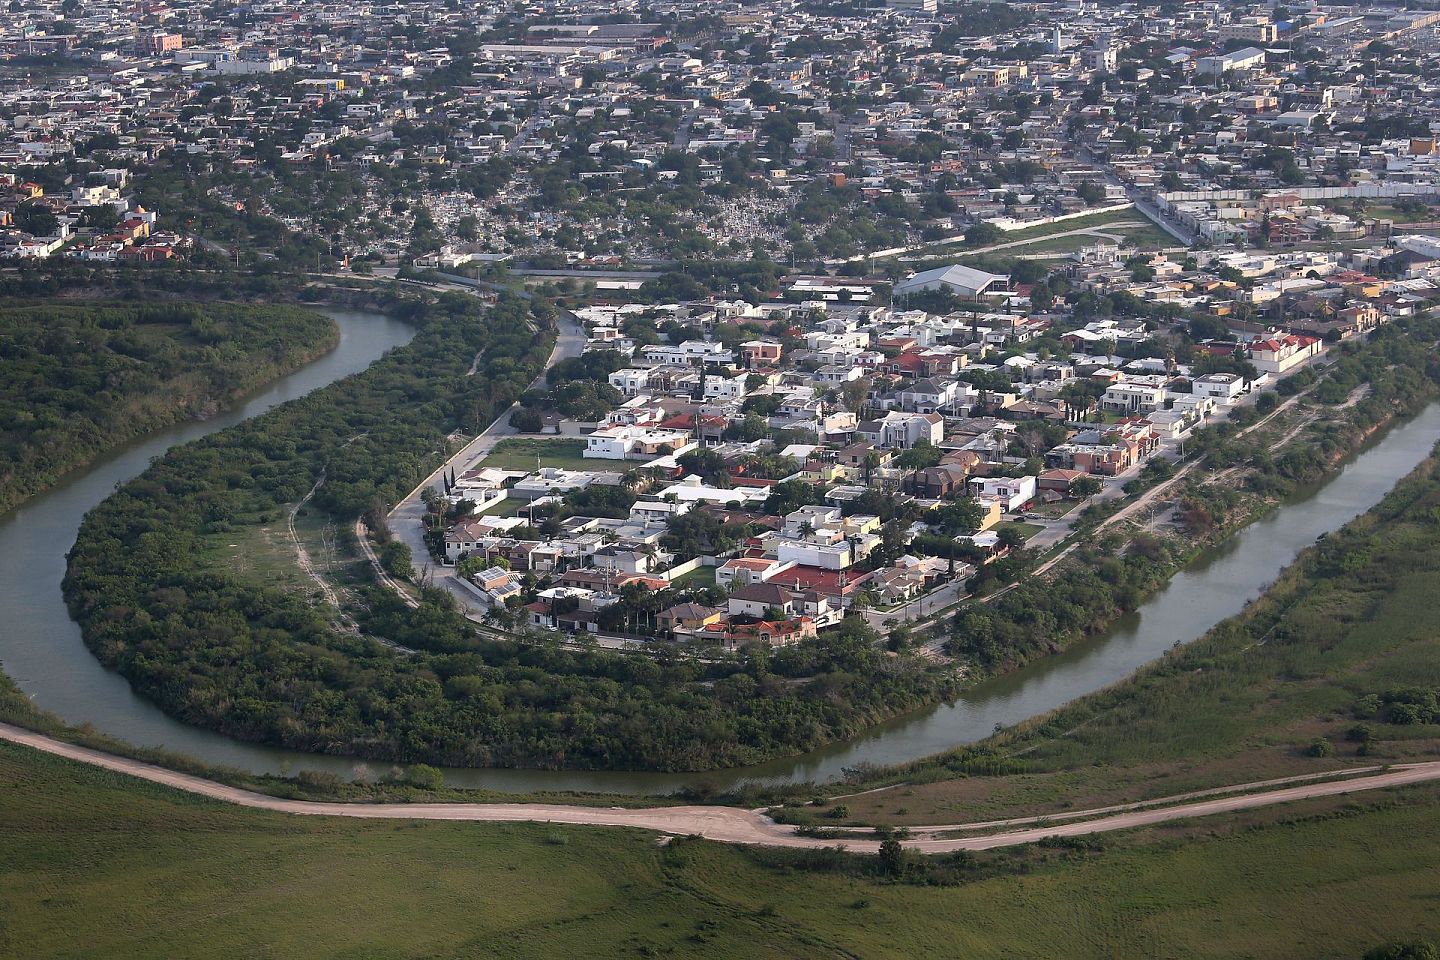 从得州布朗斯维尔市（Brownsville）望向墨西哥的马塔莫罗斯市，格兰德河将两地相隔。这片地区常常出现毒品走私活动。（Getty）